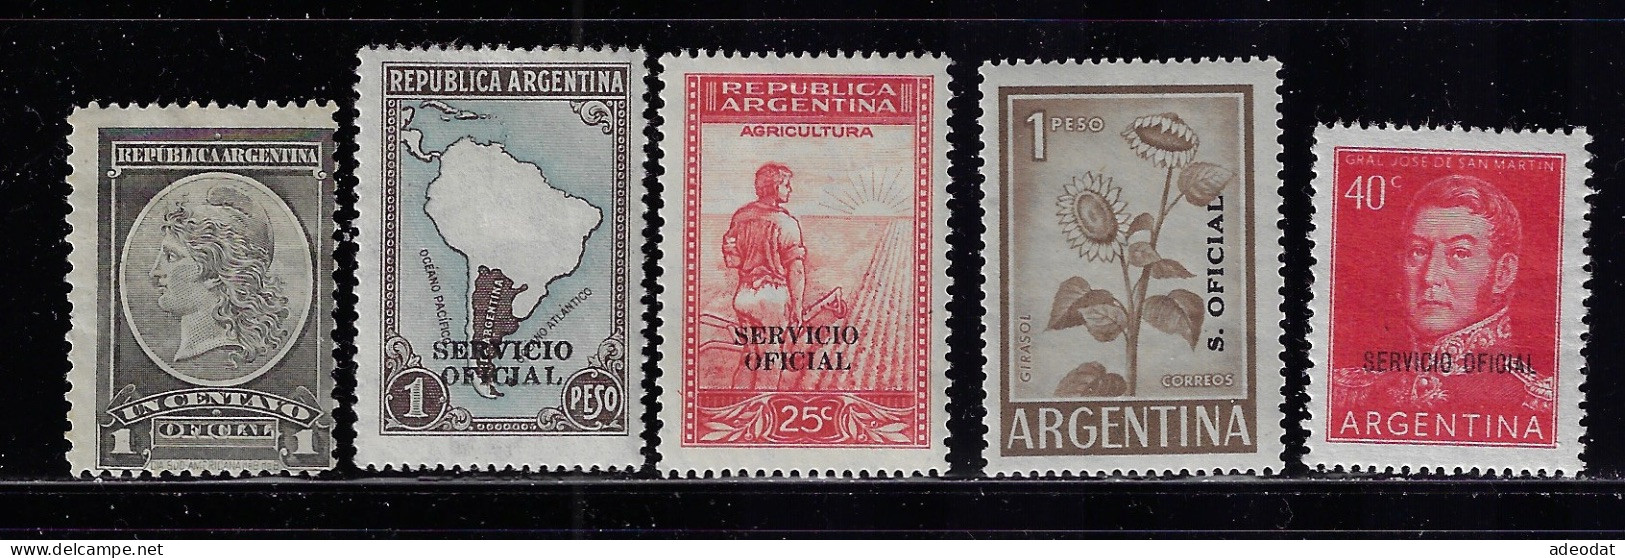 ARGENTINA 1901-1960  OFFICIAL STAMPS  SCOTT #O31,O49,O51,O96,O116  MH - Neufs